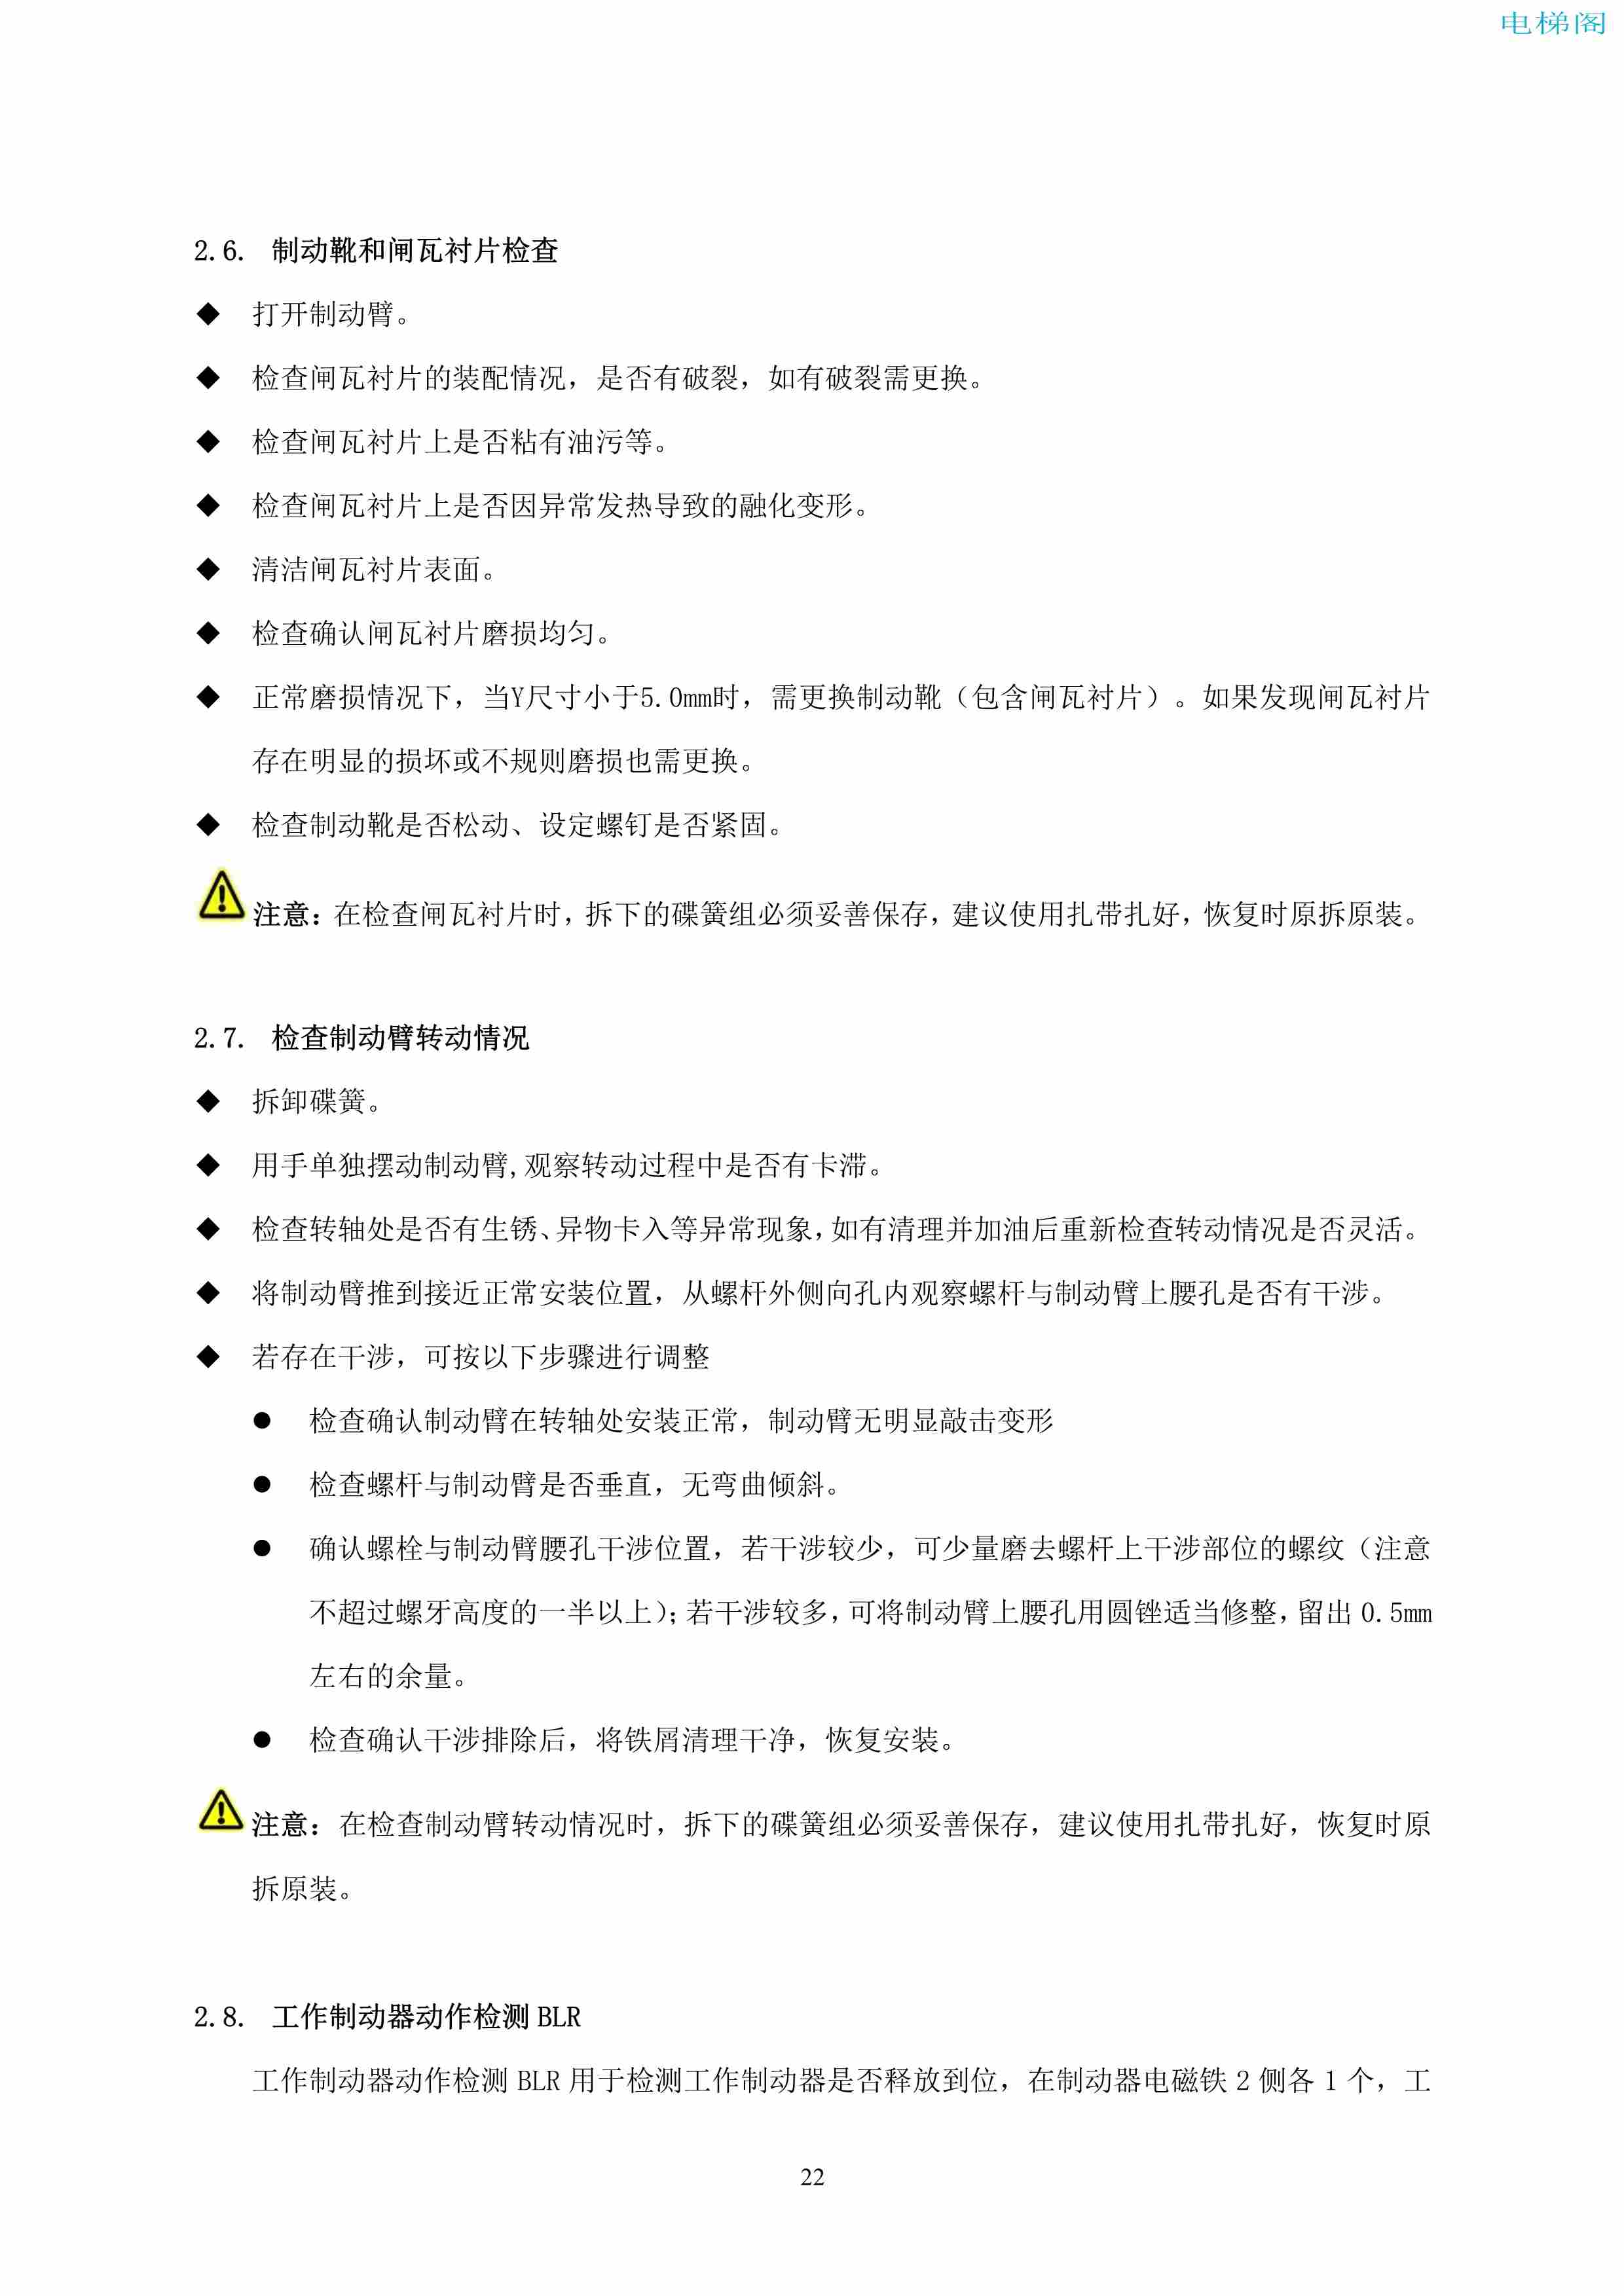 上海三菱电梯有限公司自动扶梯制动器维护作业要领汇编_23.jpg